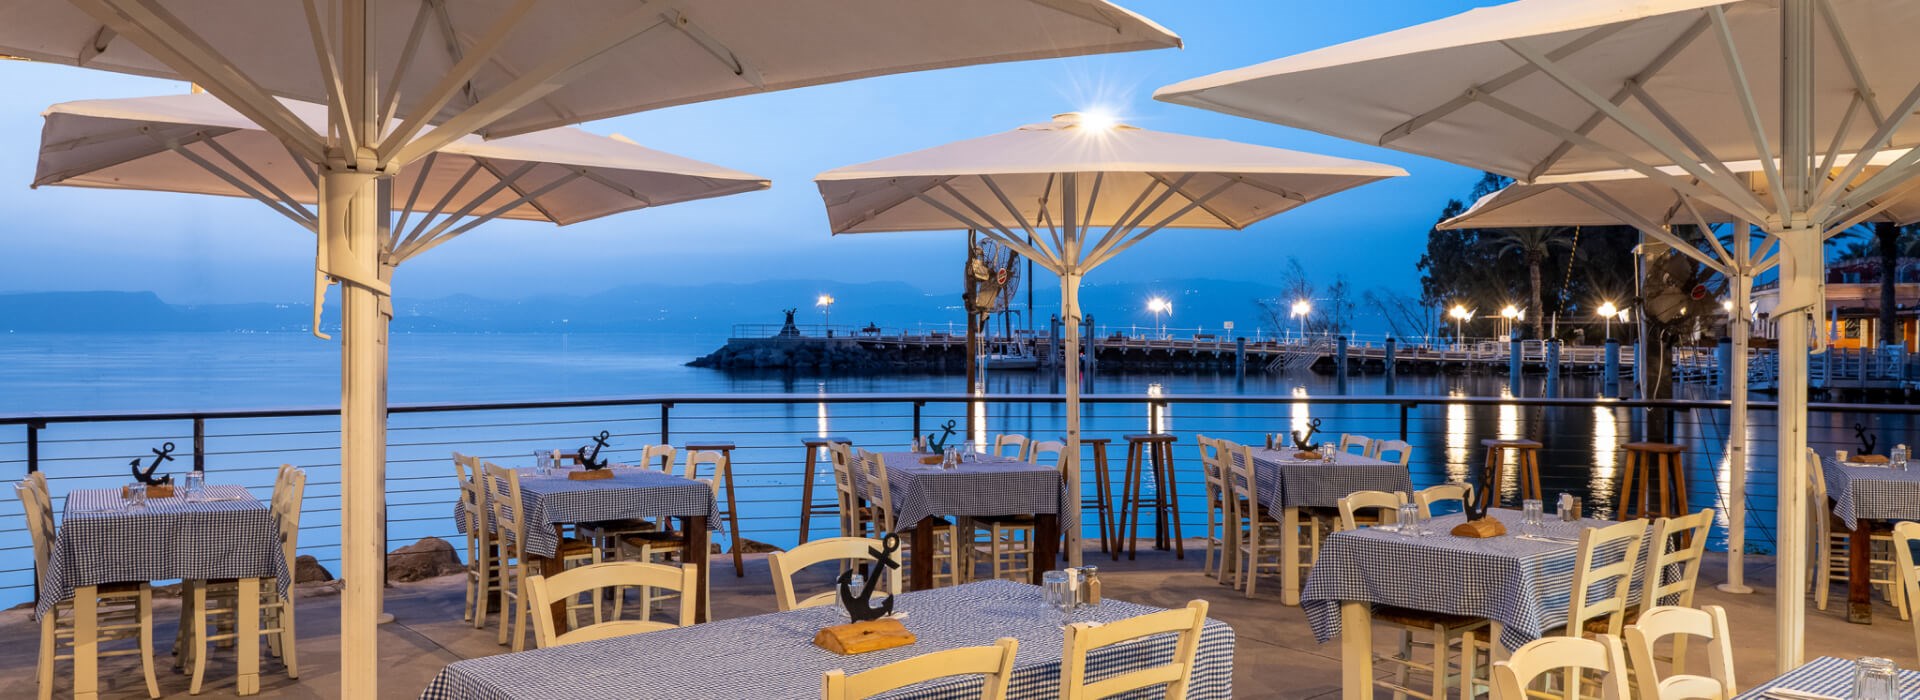 Ein Gev Resort - sea side restaurant 